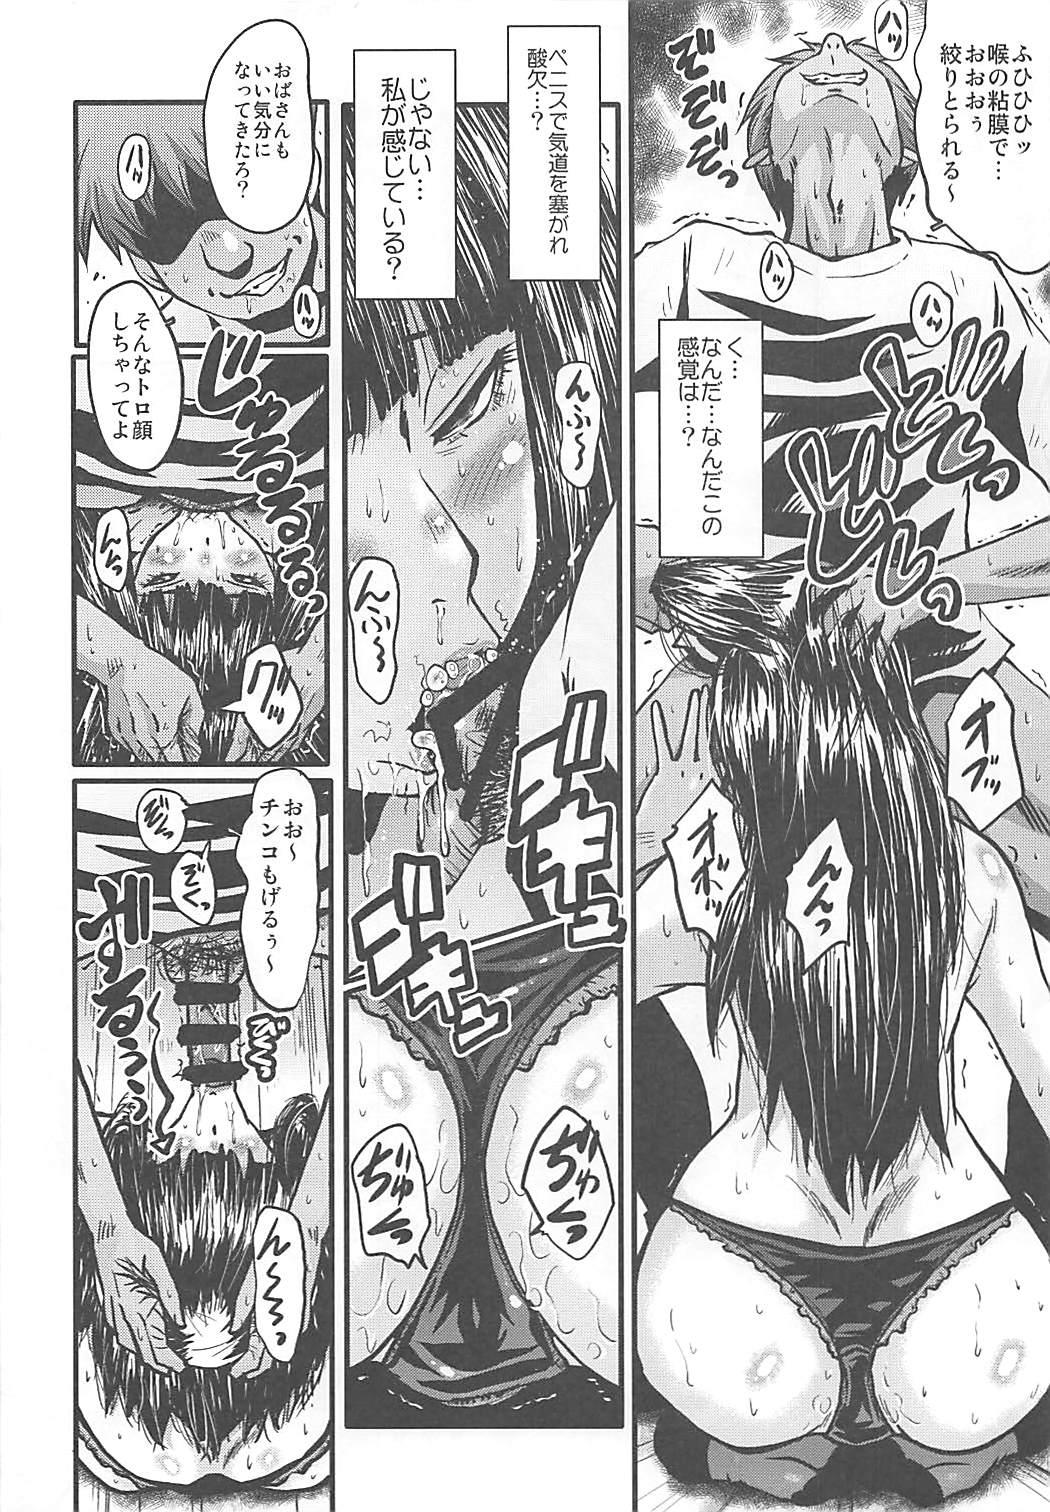 Cousin (C93) [Urakata Honpo (SINK)] Urabambi Vol. 56 ~Choubatsubou no Oyako Ana~ Bijin Oyako no Kimeseku Kairaku Jigoku~ (Girls und Panzer) - Girls und panzer Shemale Sex - Page 11